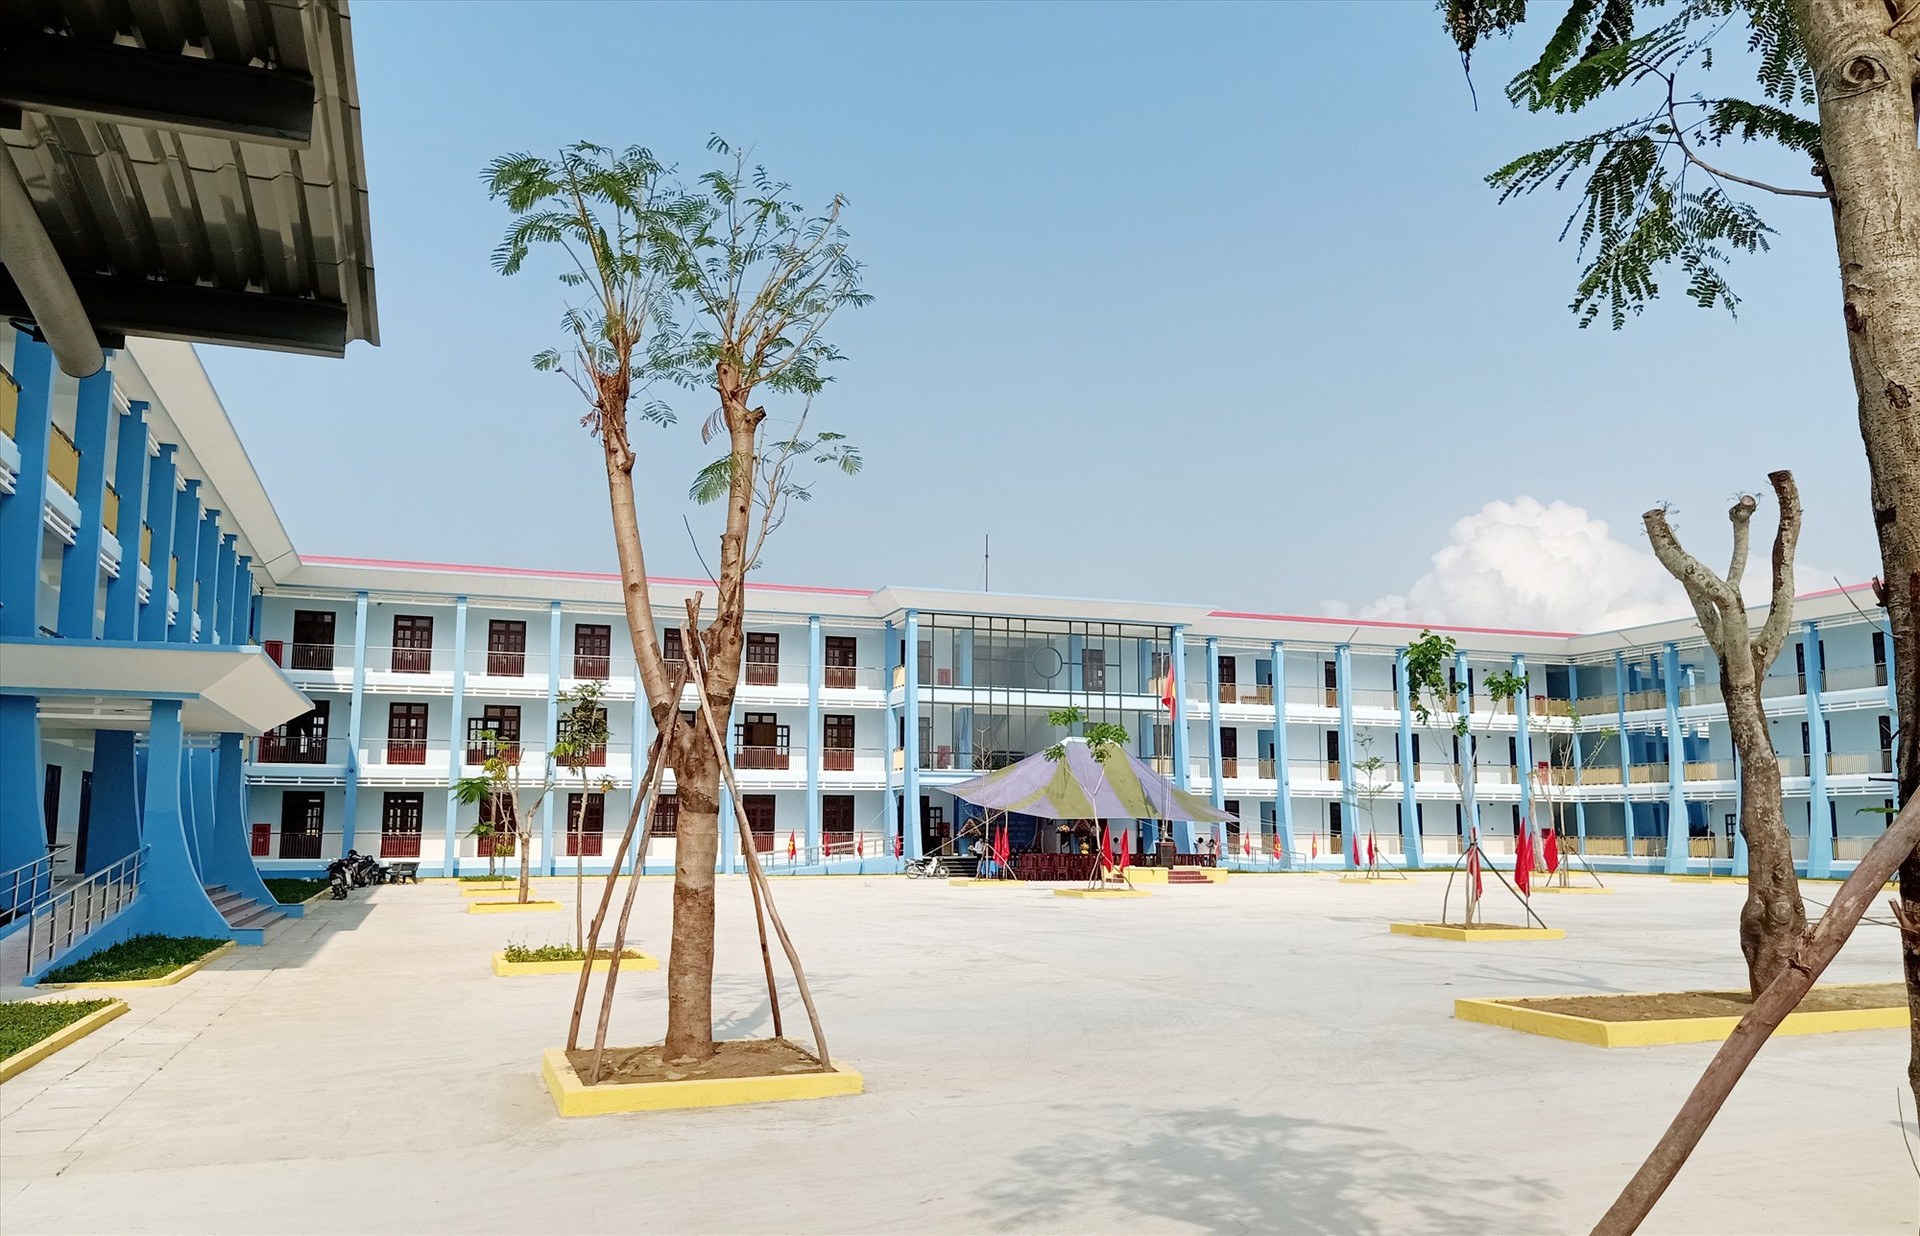 Công trình Trường THCS Nguyễn Trãi được chọn gắn biển công trình chào mừng Đại hội Đảng bộ huyện lần thứ XXII (nhiệm kỳ 2020 - 2025). Ảnh: HOÀNG LIÊN